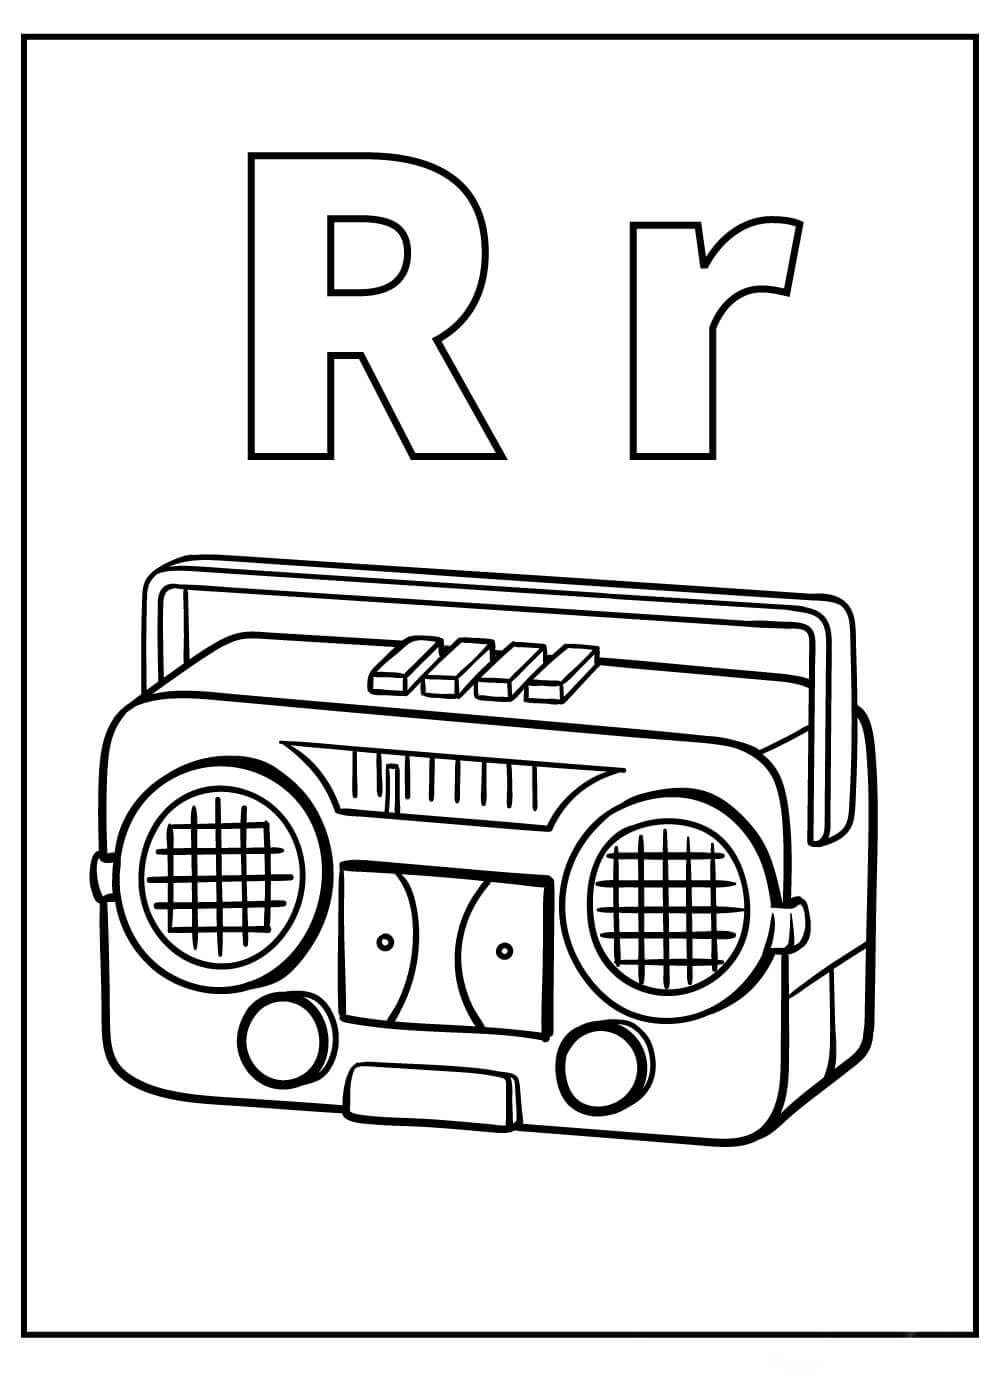 Dibujos de Letra R y Radio para colorear